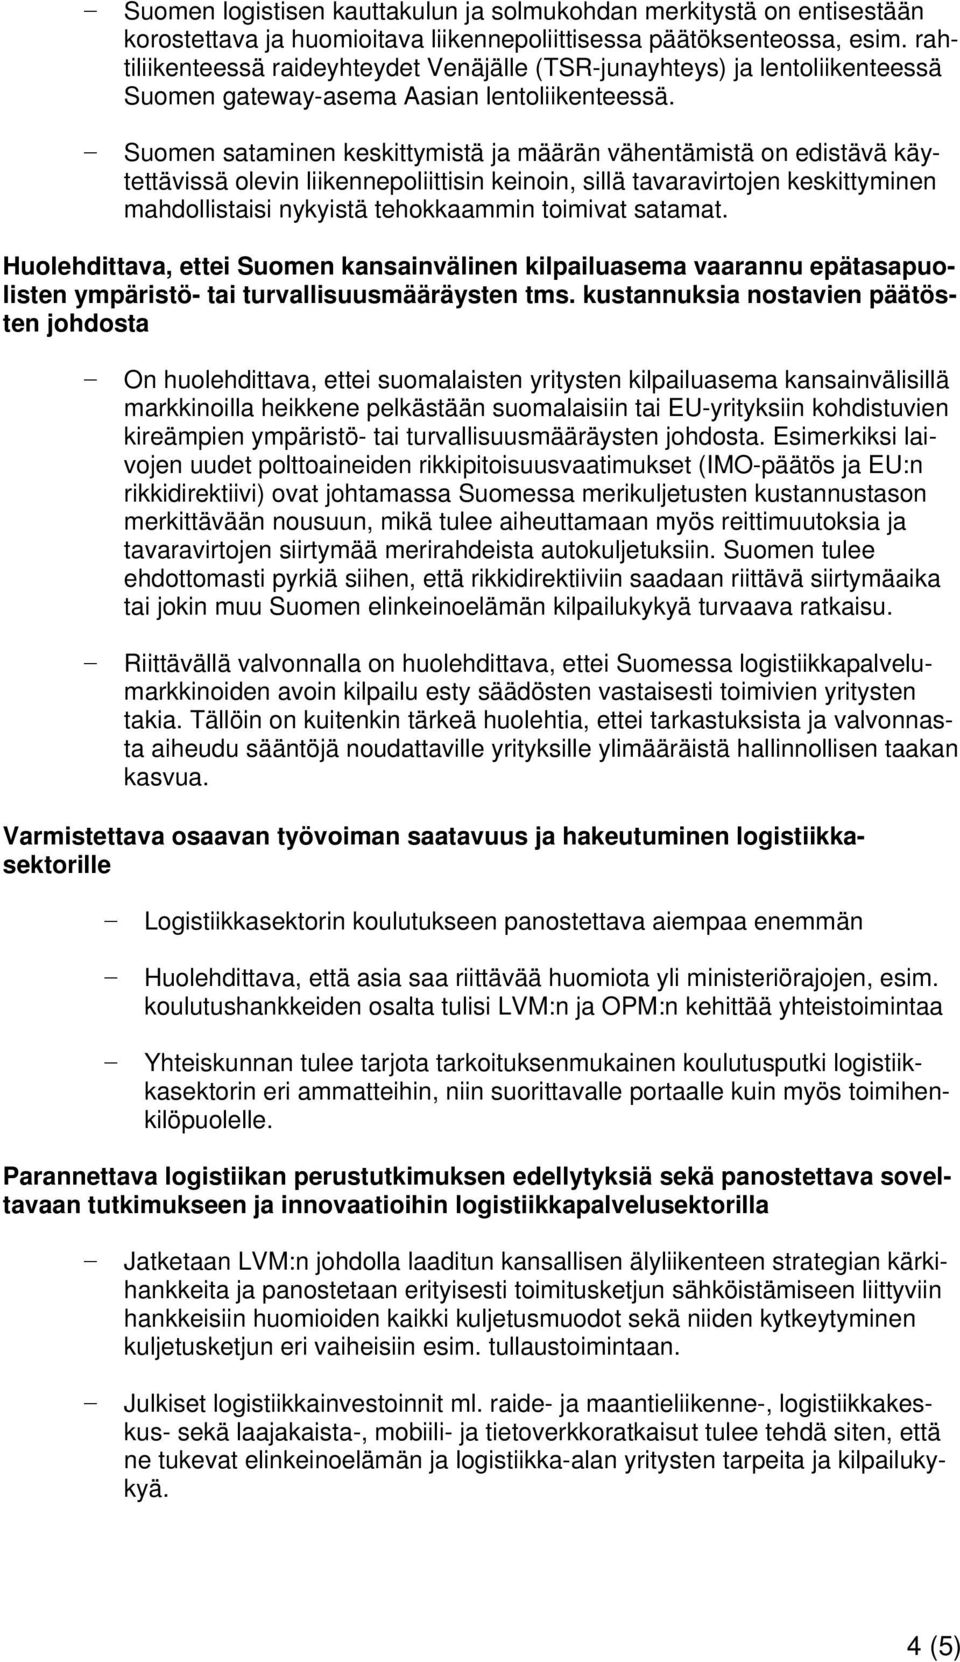 Suomen sataminen keskittymistä ja määrän vähentämistä on edistävä käytettävissä olevin liikennepoliittisin keinoin, sillä tavaravirtojen keskittyminen mahdollistaisi nykyistä tehokkaammin toimivat